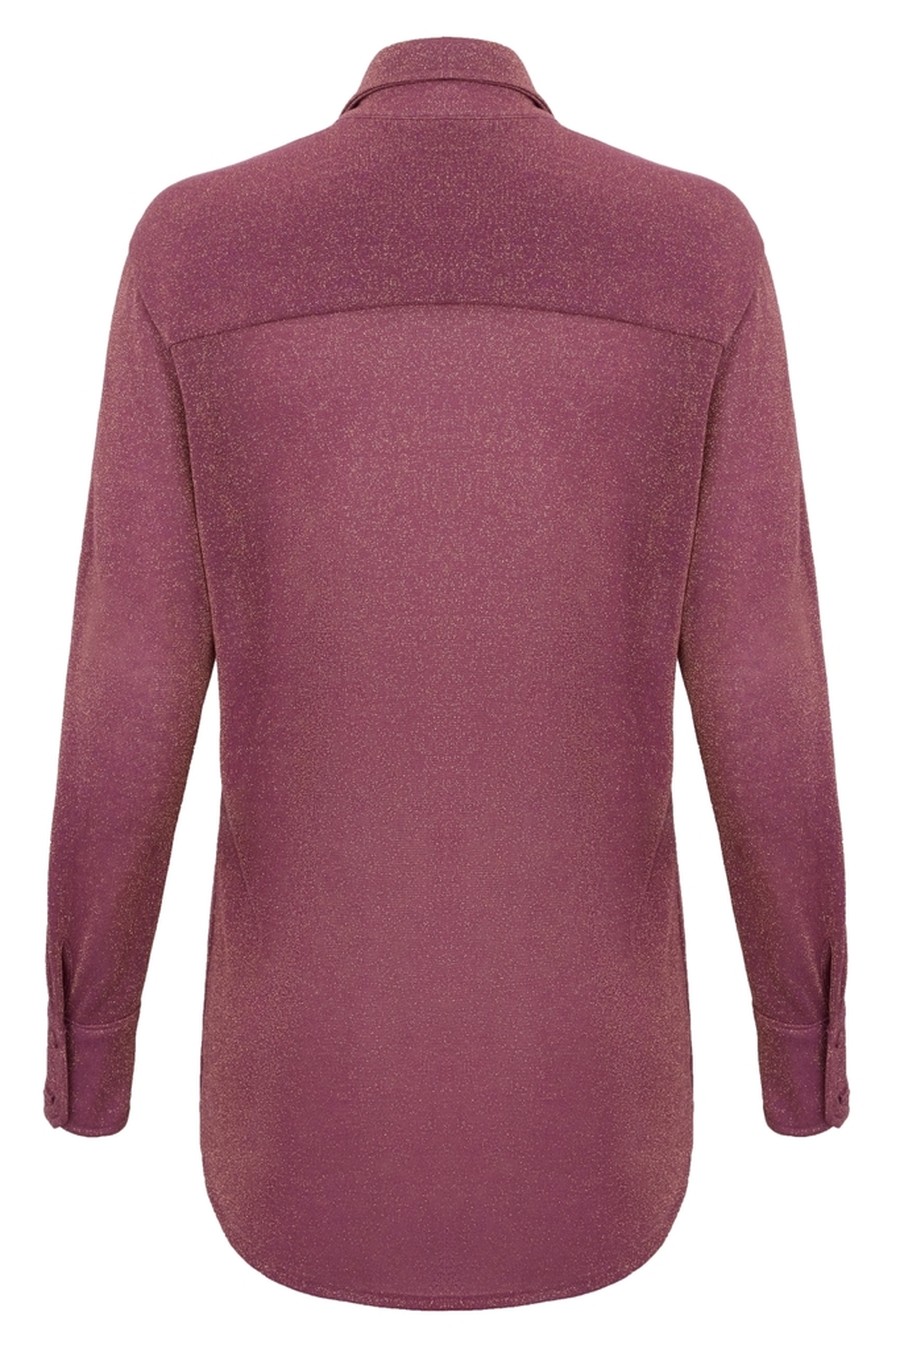 camisa lurex purple SB48 ripple bb